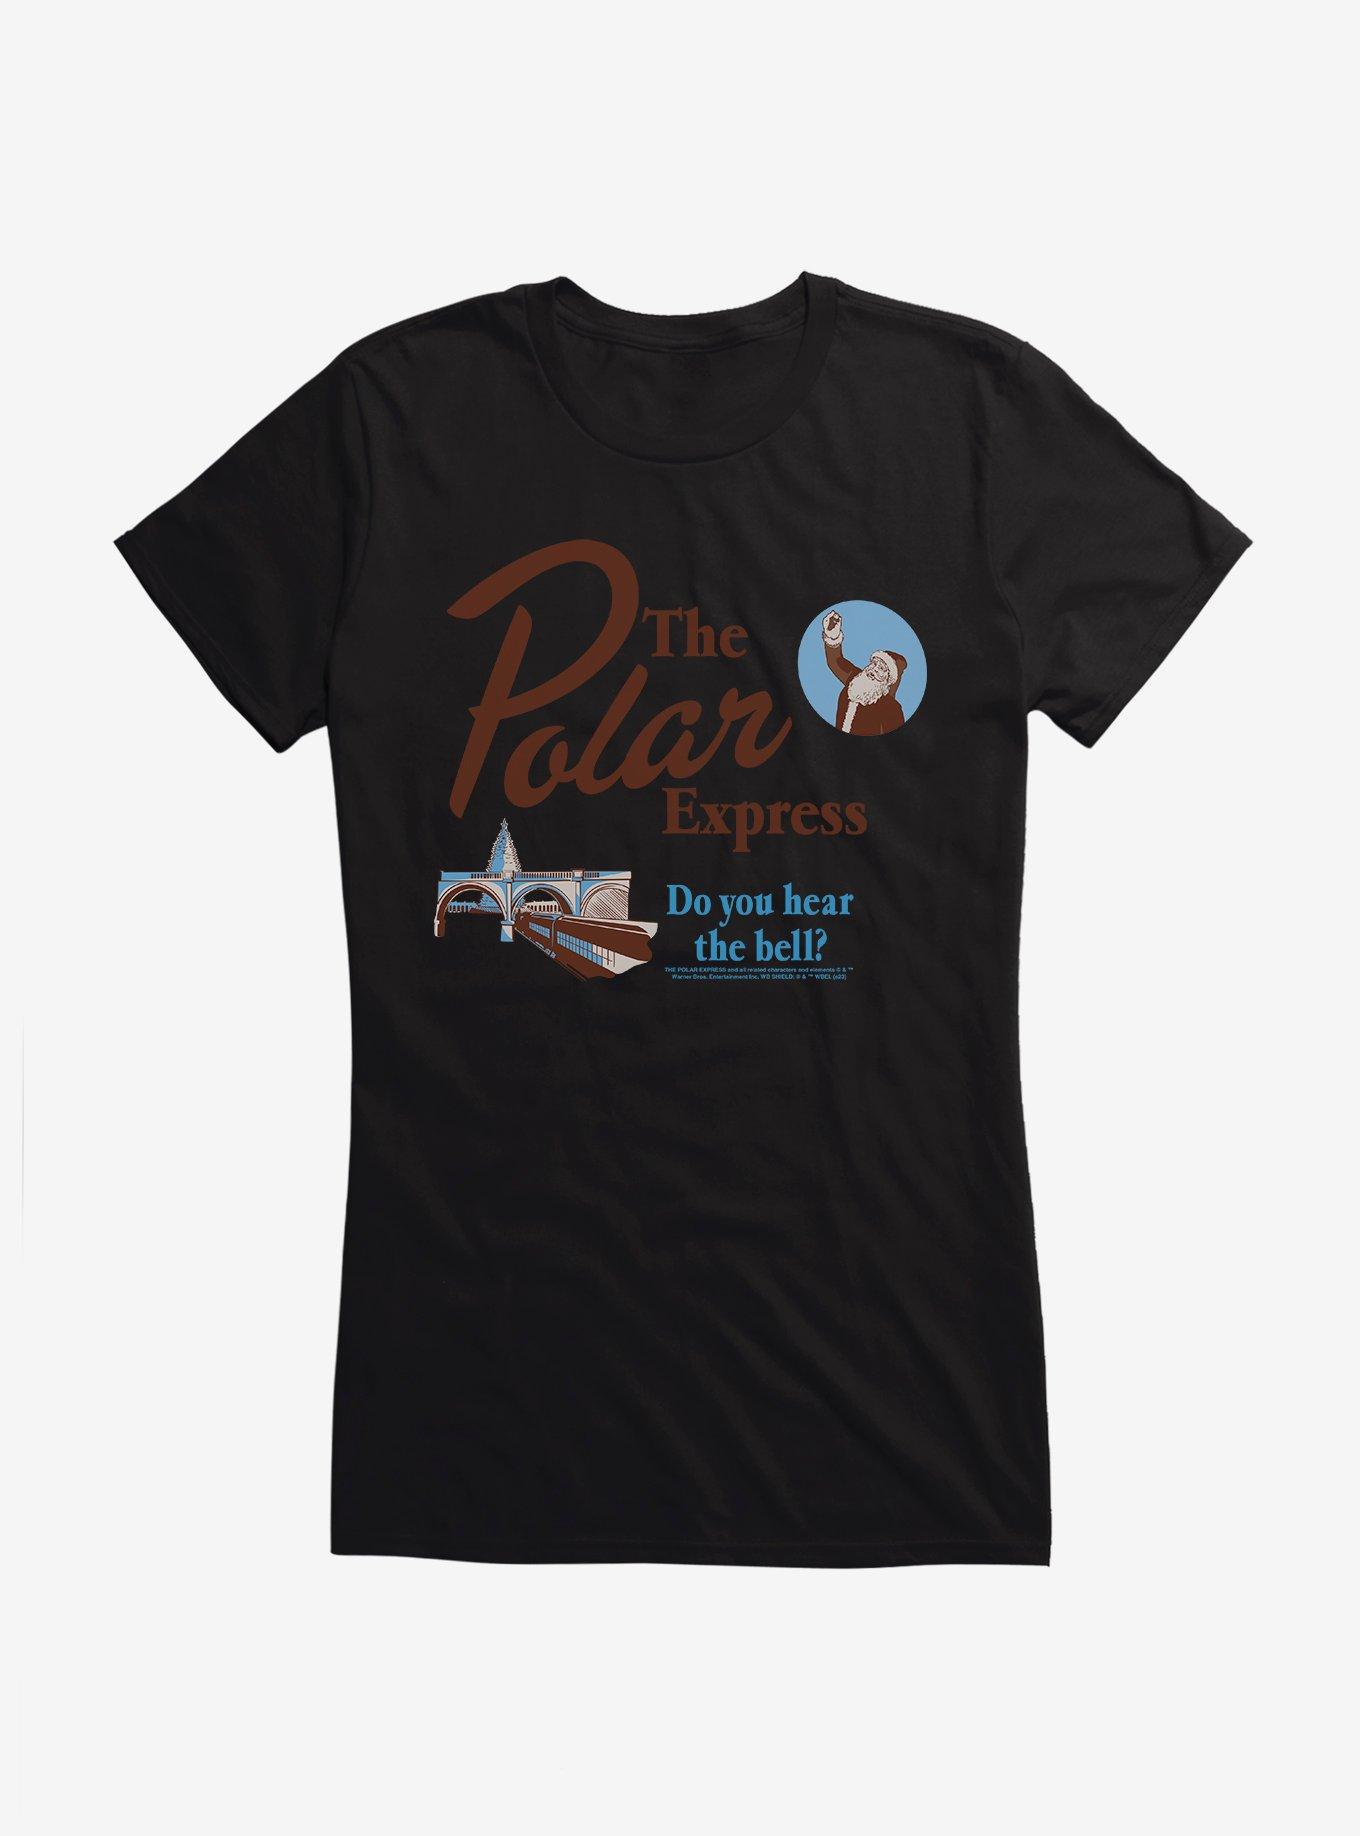 The Polar Express Did You Hear Bell? Girls T-Shirt